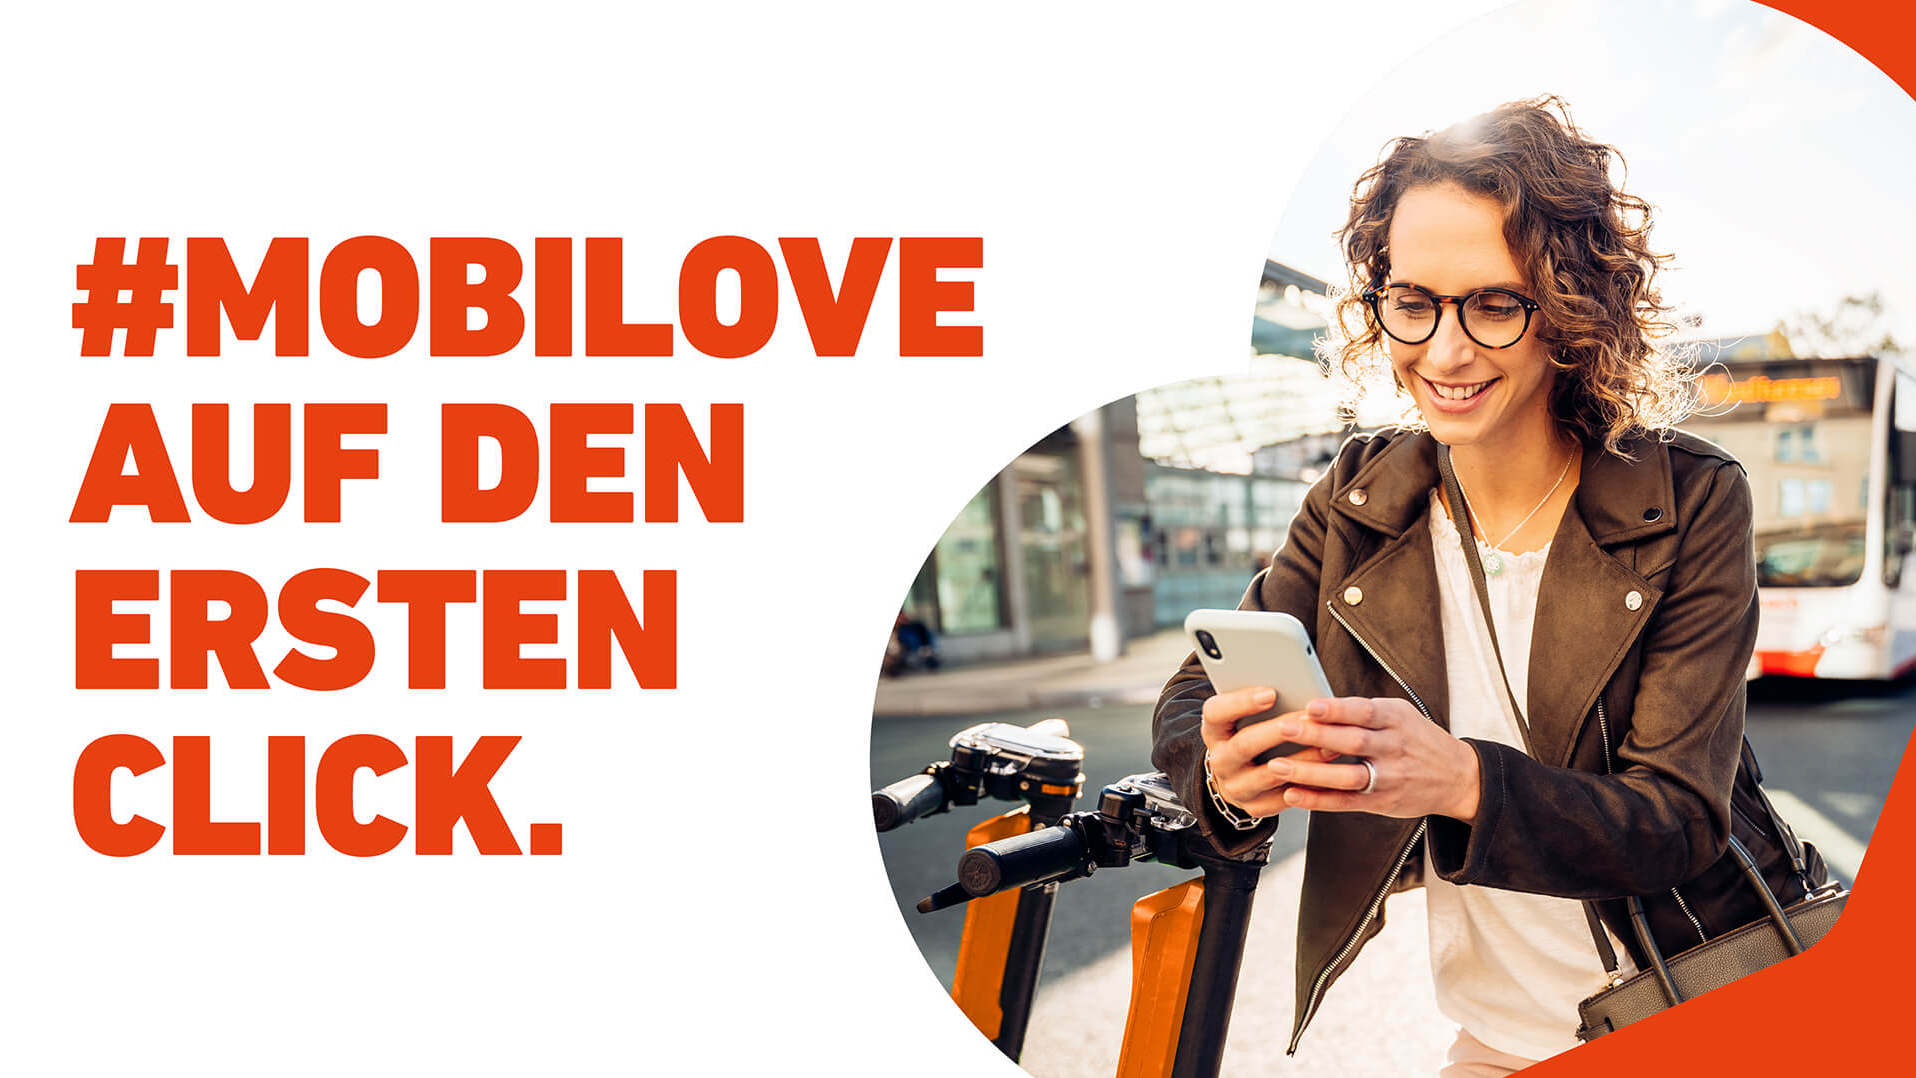 Mobilove-Kampagnenmotiv: Frau steht an einem E-Scooter und hält ein Smartphone in der Hand